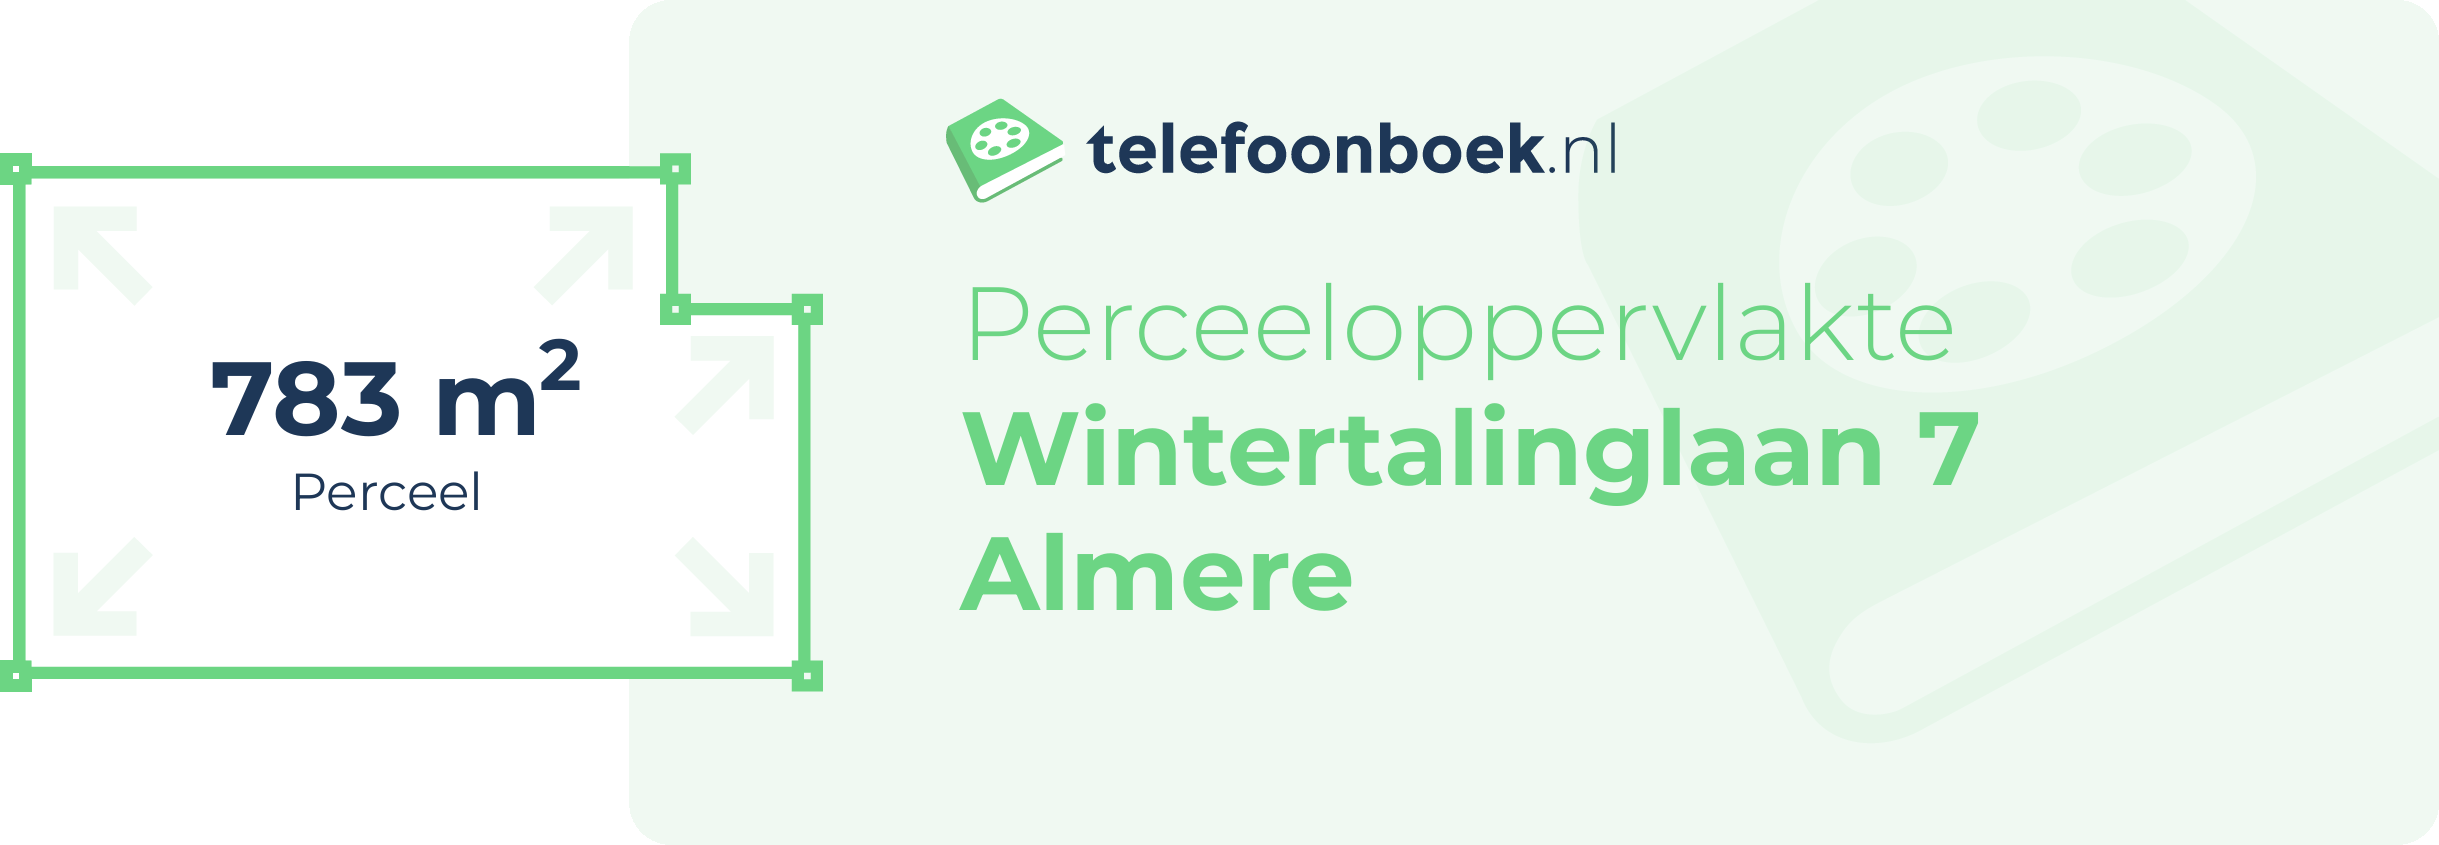 Perceeloppervlakte Wintertalinglaan 7 Almere